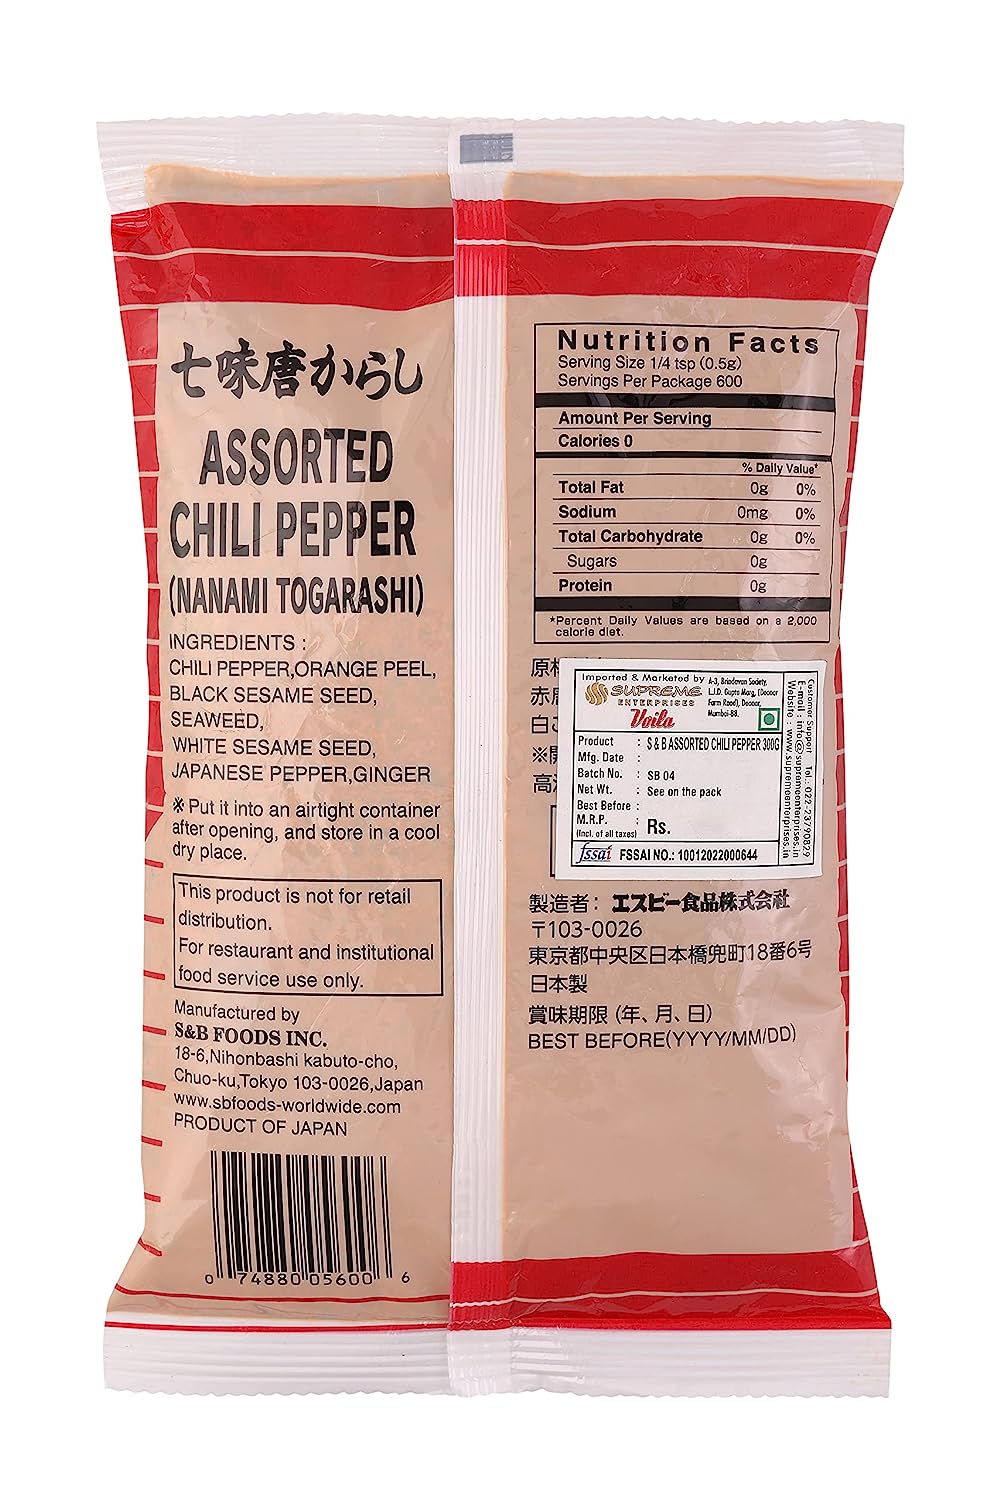 S&B Shichimi Nanami Togarashi Chilli Powder 300g